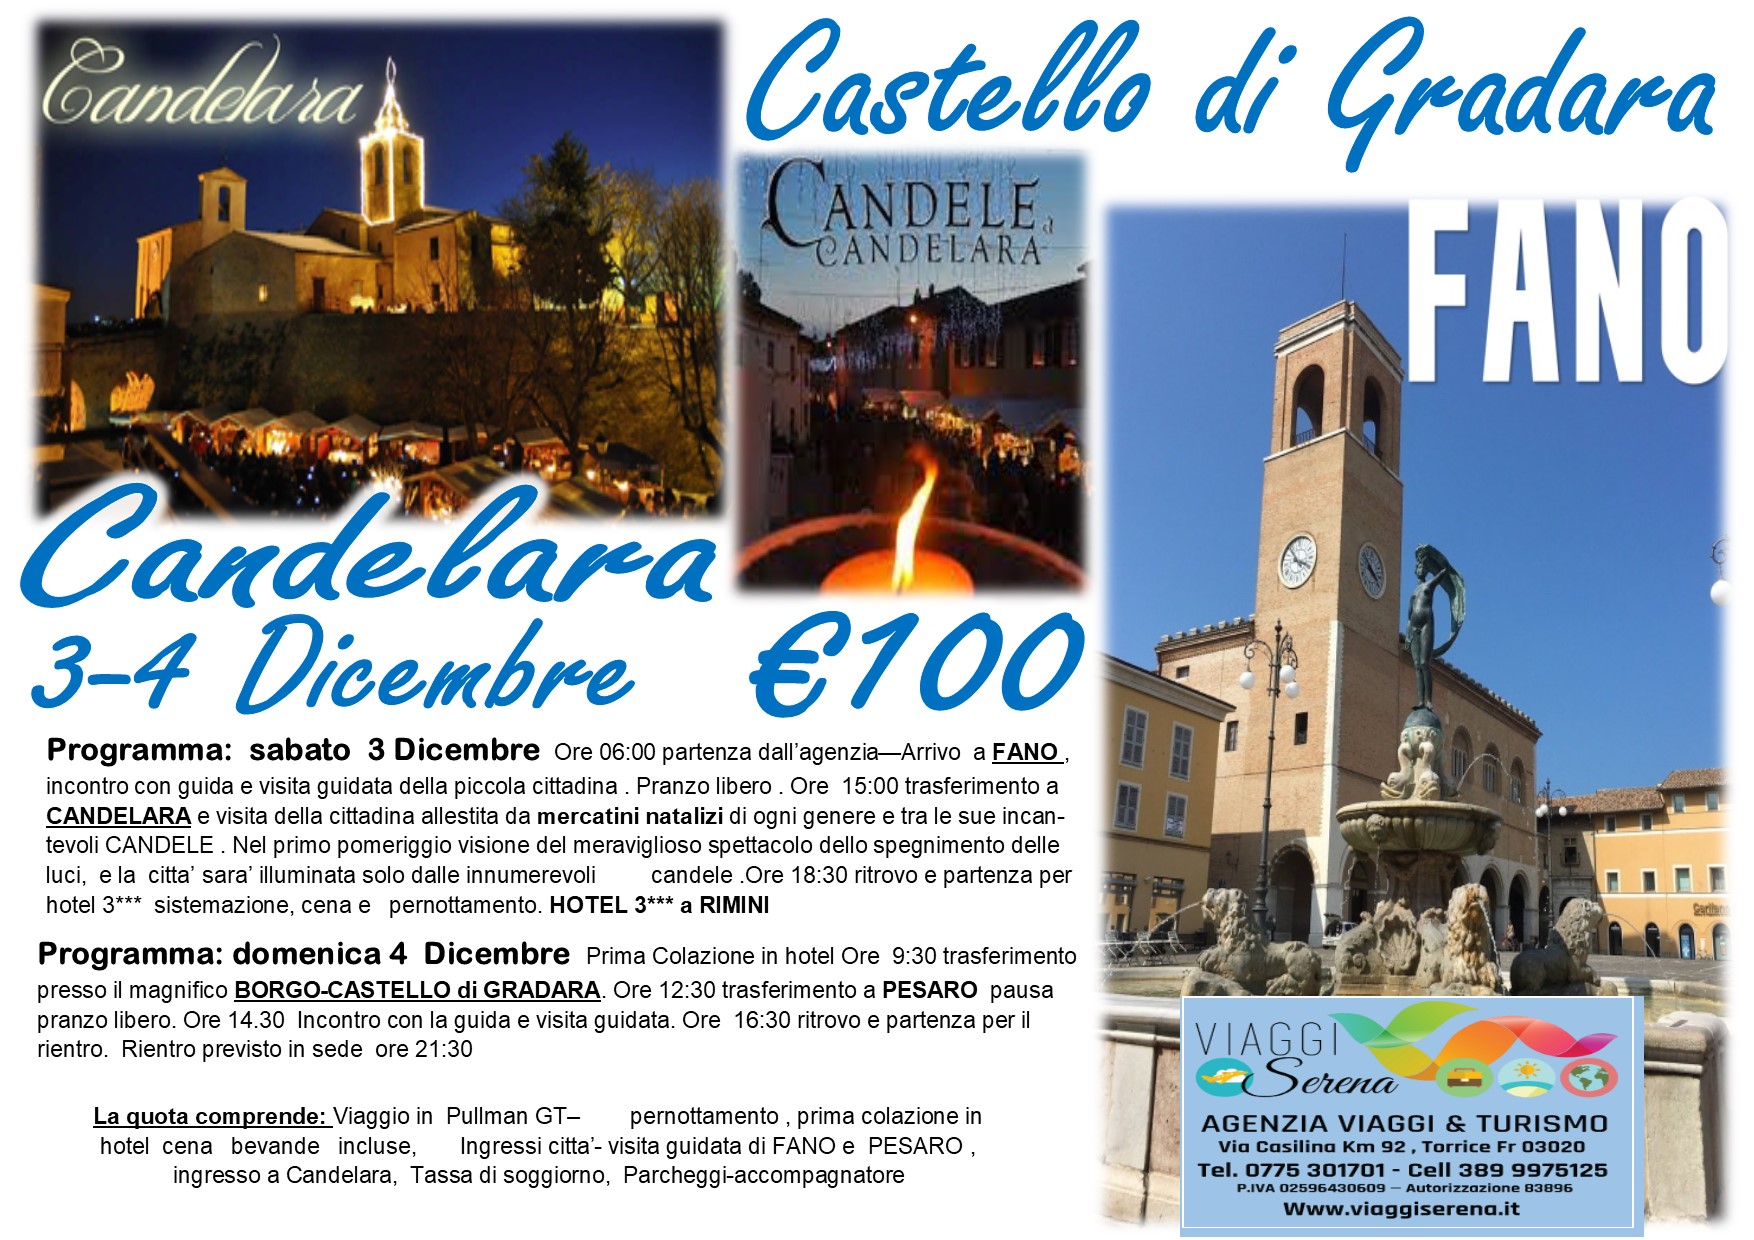 Viaggi di Gruppo: Candelara , Castello di Gradara , Fano & Pesaro 3-4 Dicembre € 100,00